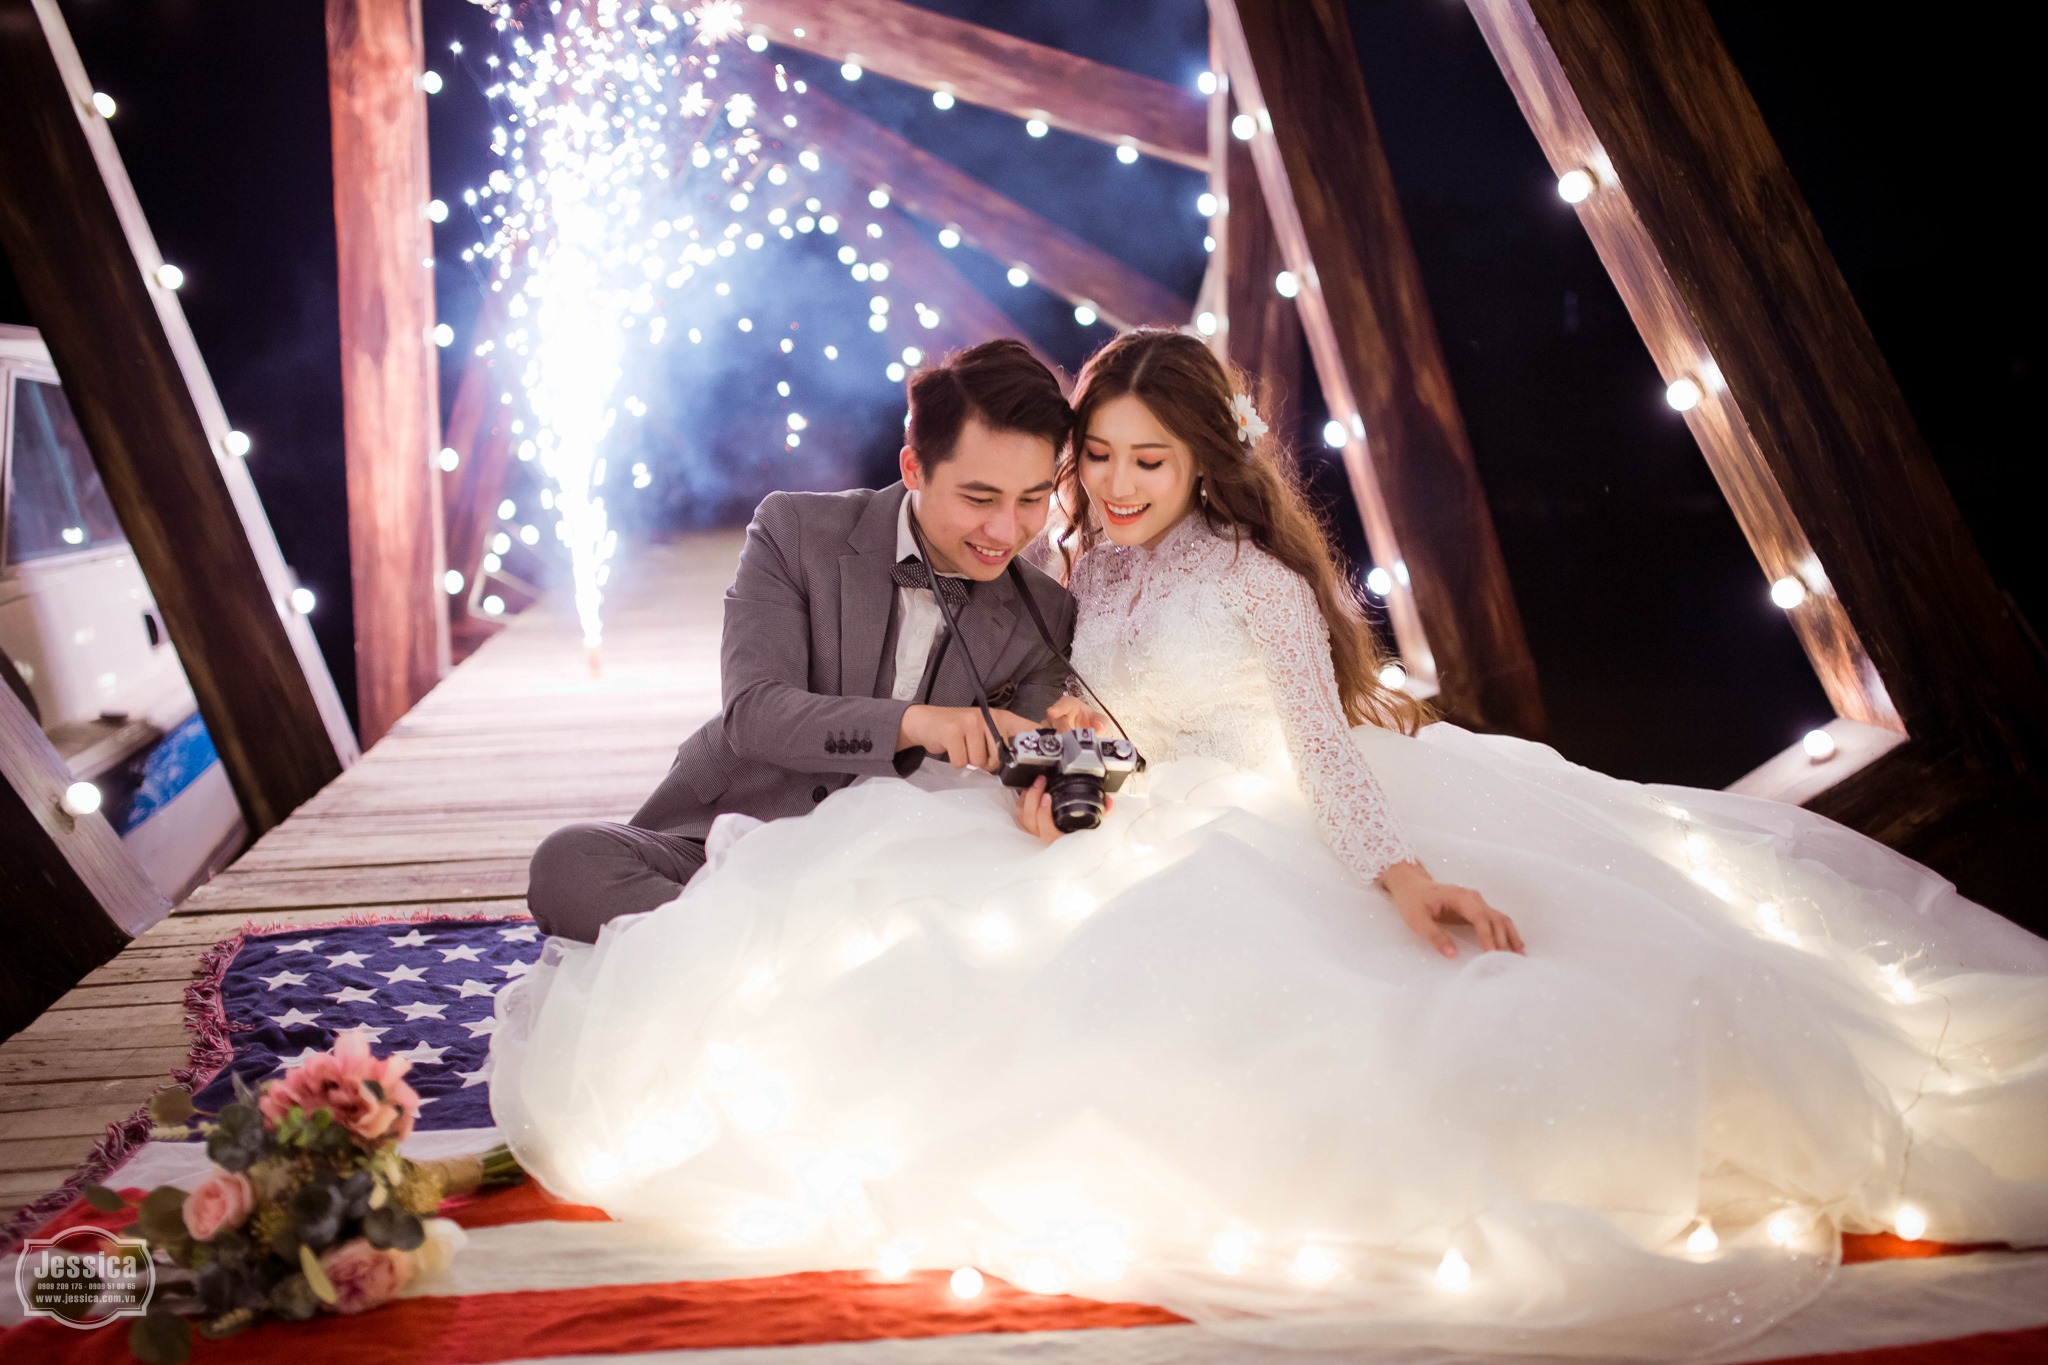 Studio chụp ảnh cưới quận Tân Phú chúng tôi luôn sẵn sàng thực hiện ước mơ của bạn với chất lượng tốt nhất. Hãy đến với chúng tôi để trải nghiệm dịch vụ chụp ảnh cưới chuyên nghiệp, nghệ thuật và đầy tính sáng tạo.